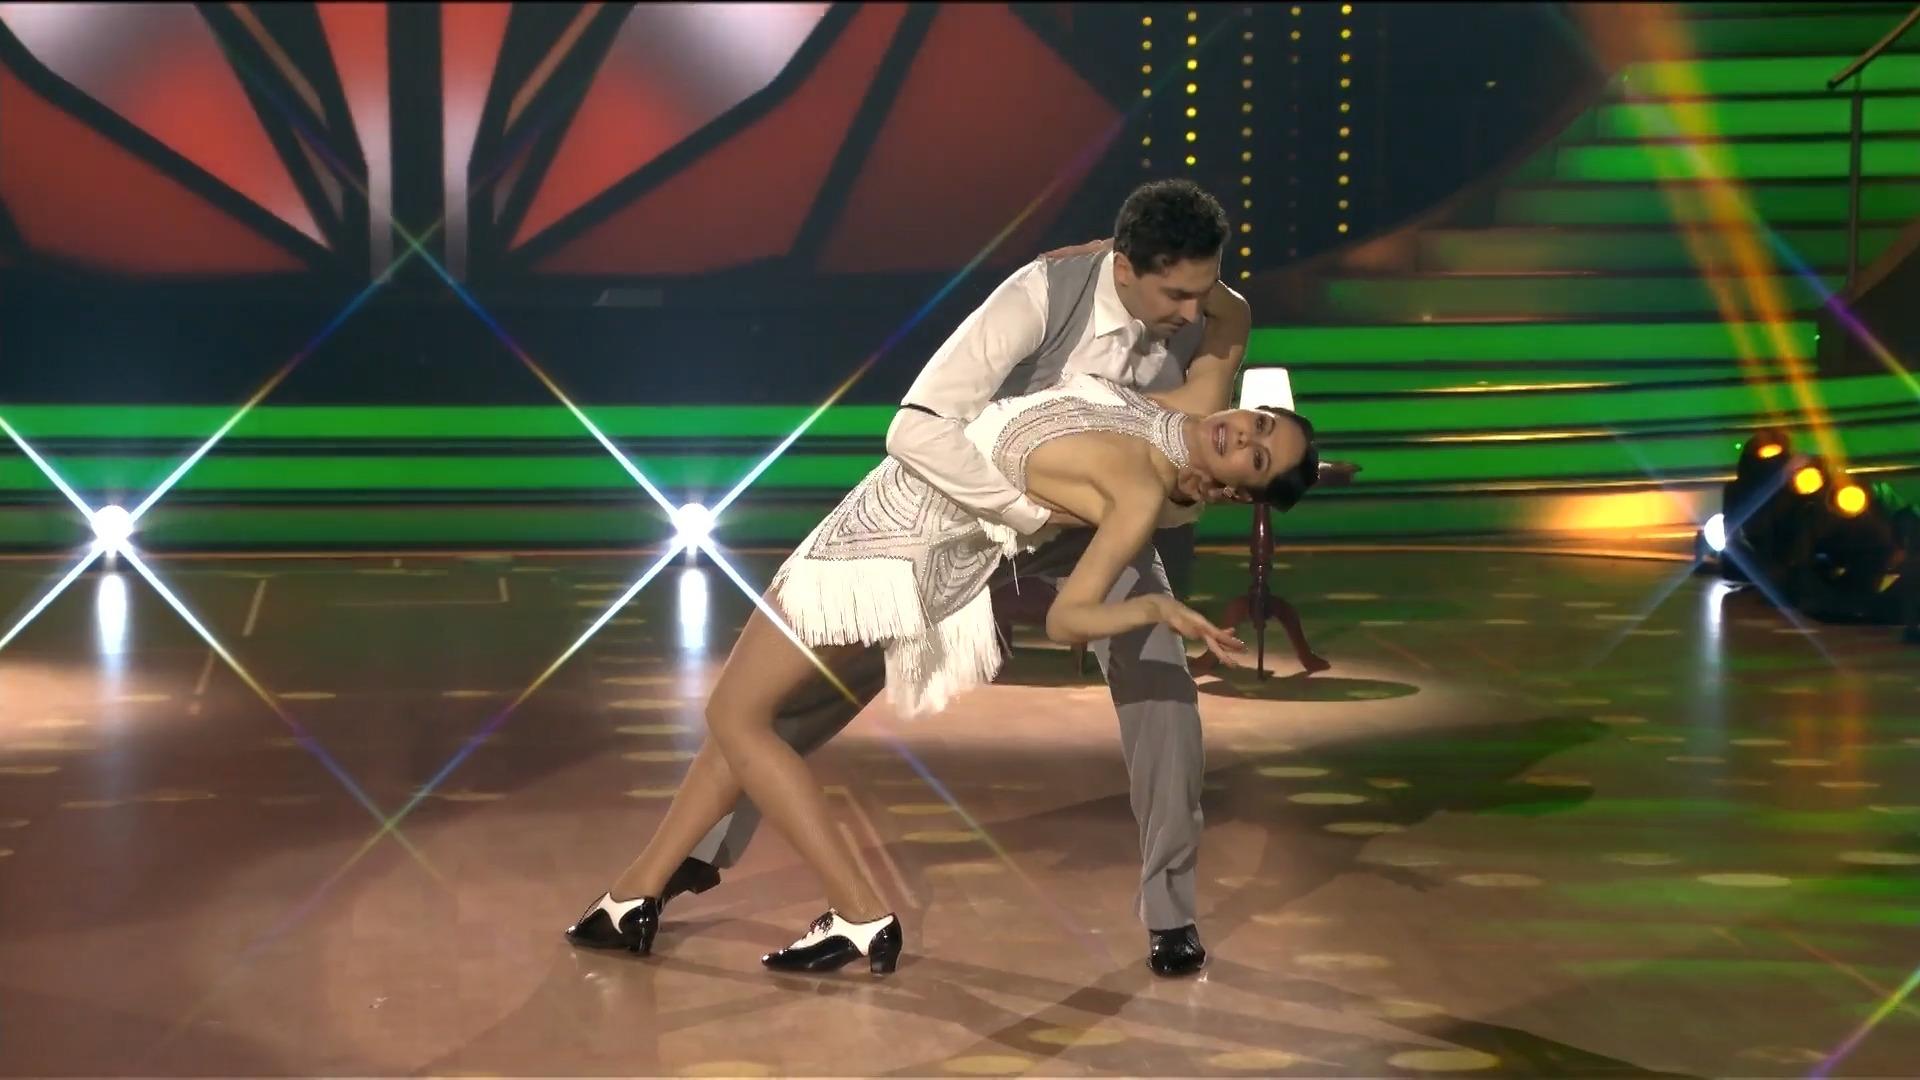 Natalia Yegorova baila con tanta gracia como Piaf en persona con un toque de elegancia "Vamos a bailar"